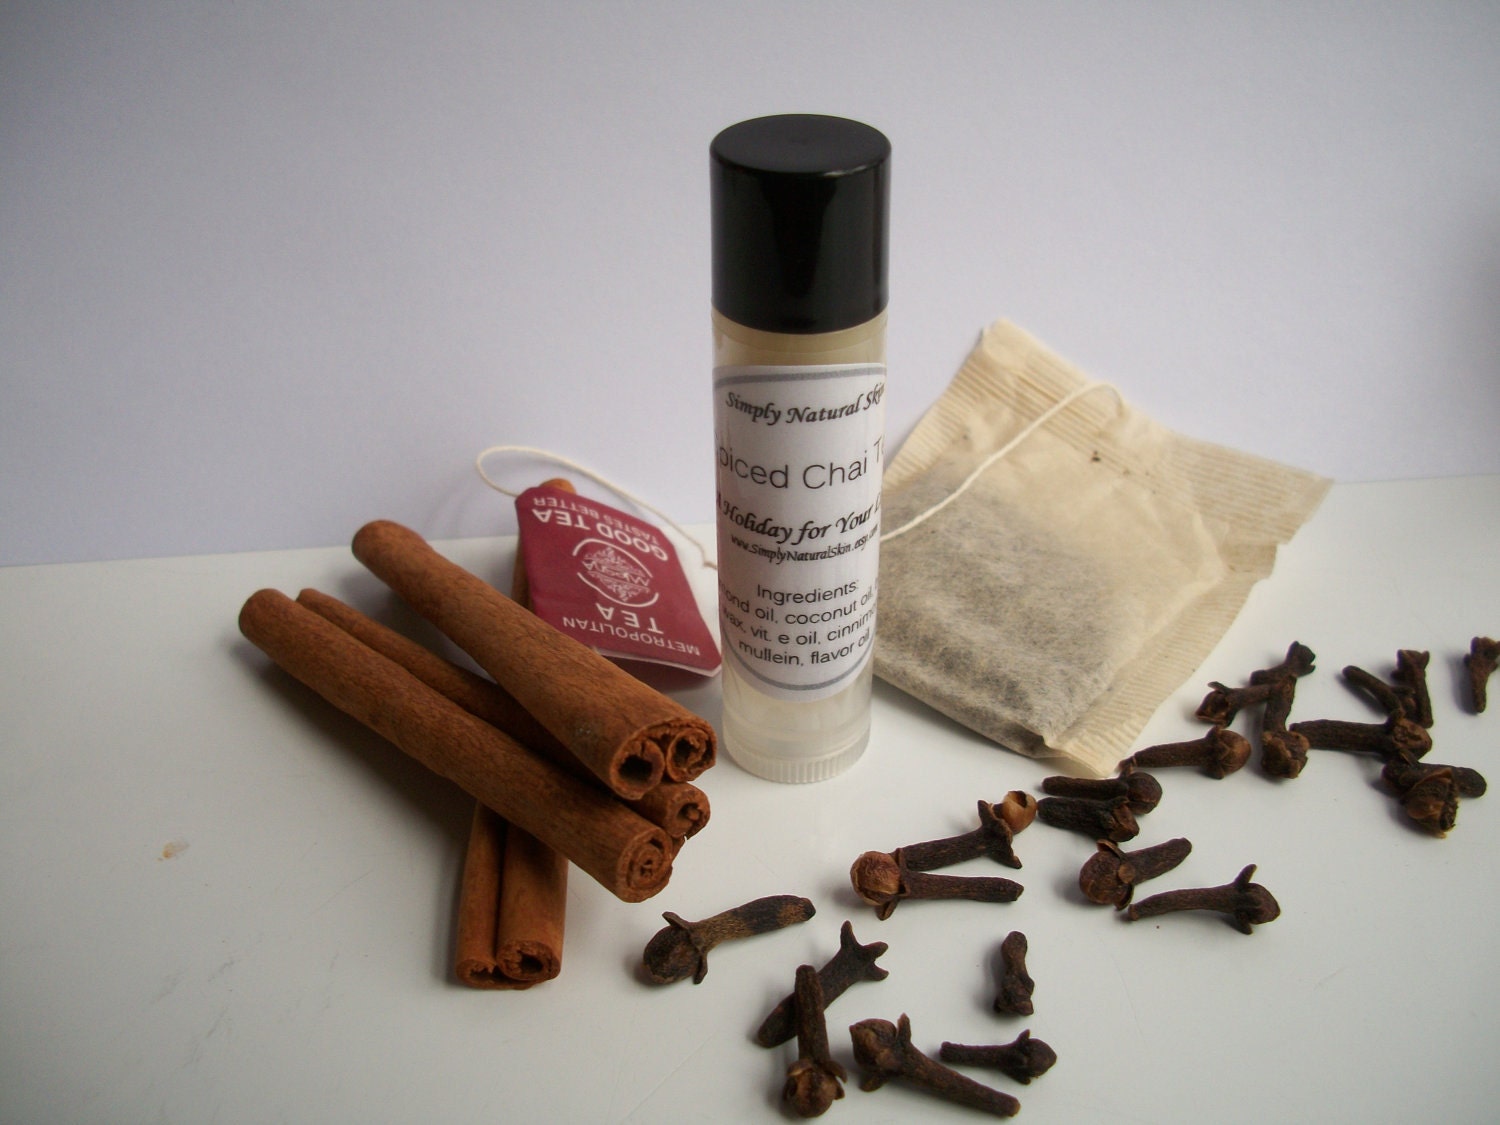 Spiced Chai Tea - Lip Balm - One Tube - by Simply Natural Skin